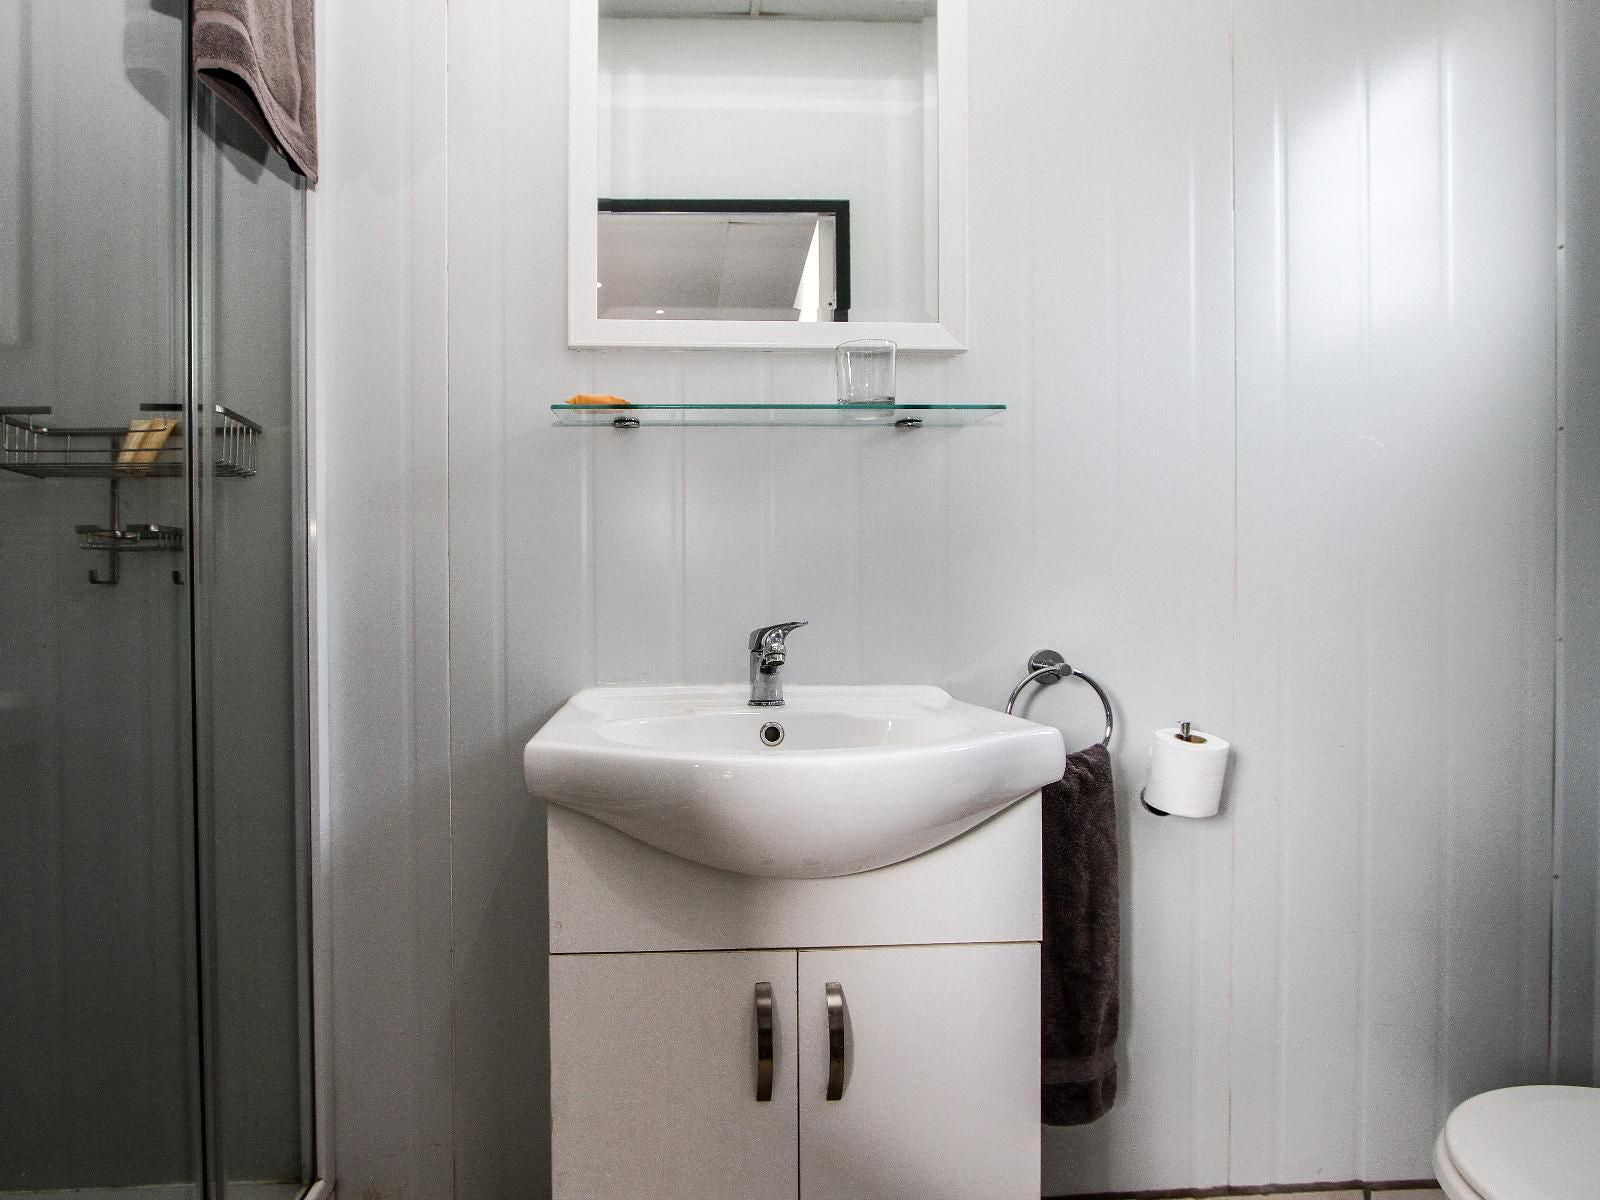 Sleepover Komatipoort Komatipoort Mpumalanga South Africa Unsaturated, Bathroom